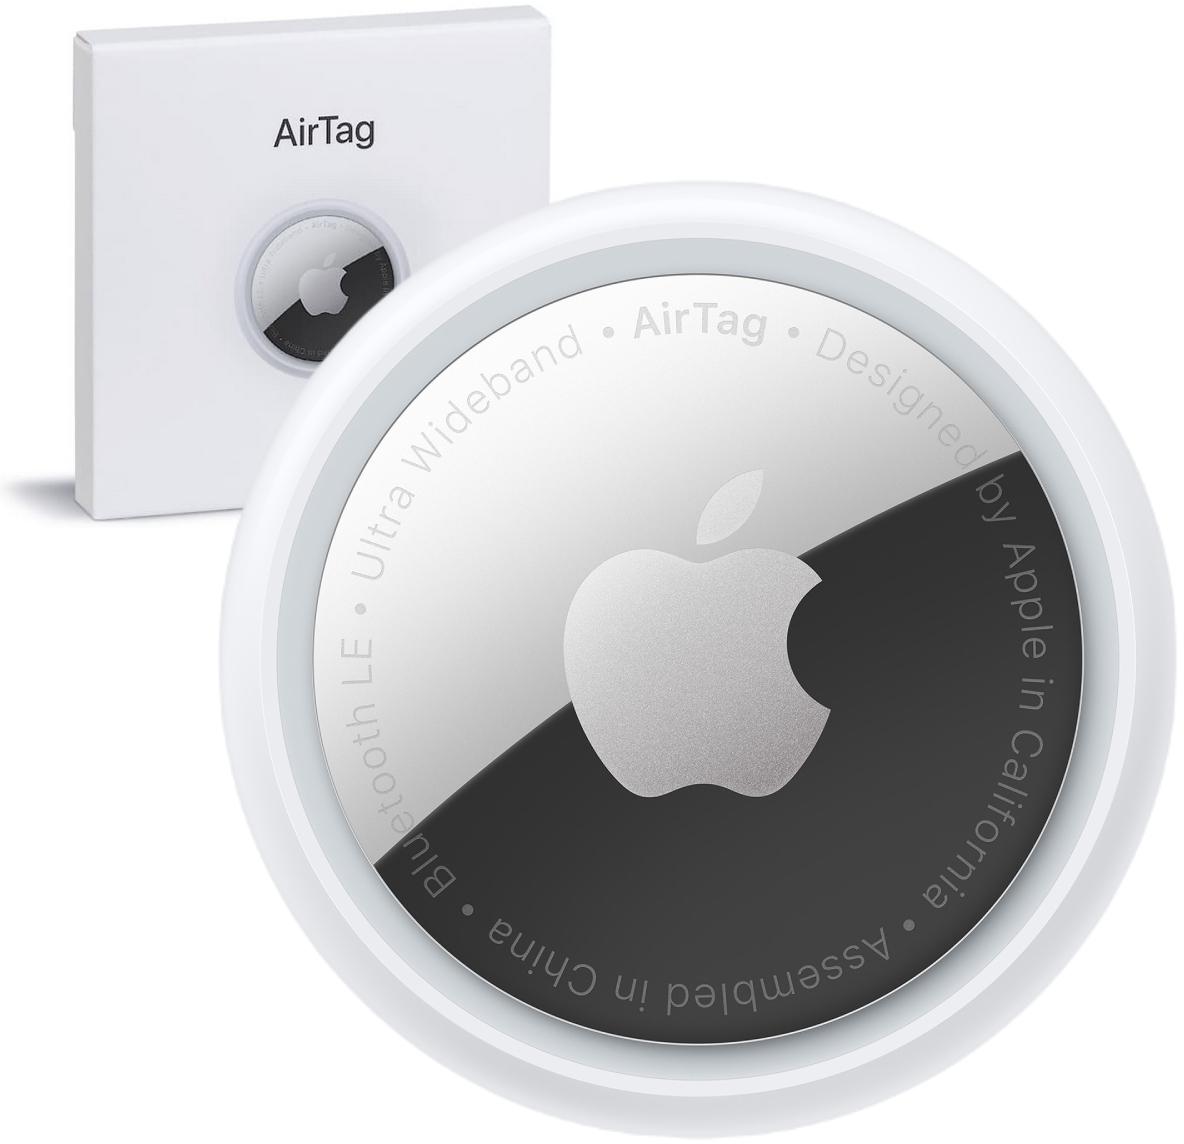 Lokalizator przedmiotów Apple AirTag MX532ZY/A 1 szt. - najważniejsze cechy: